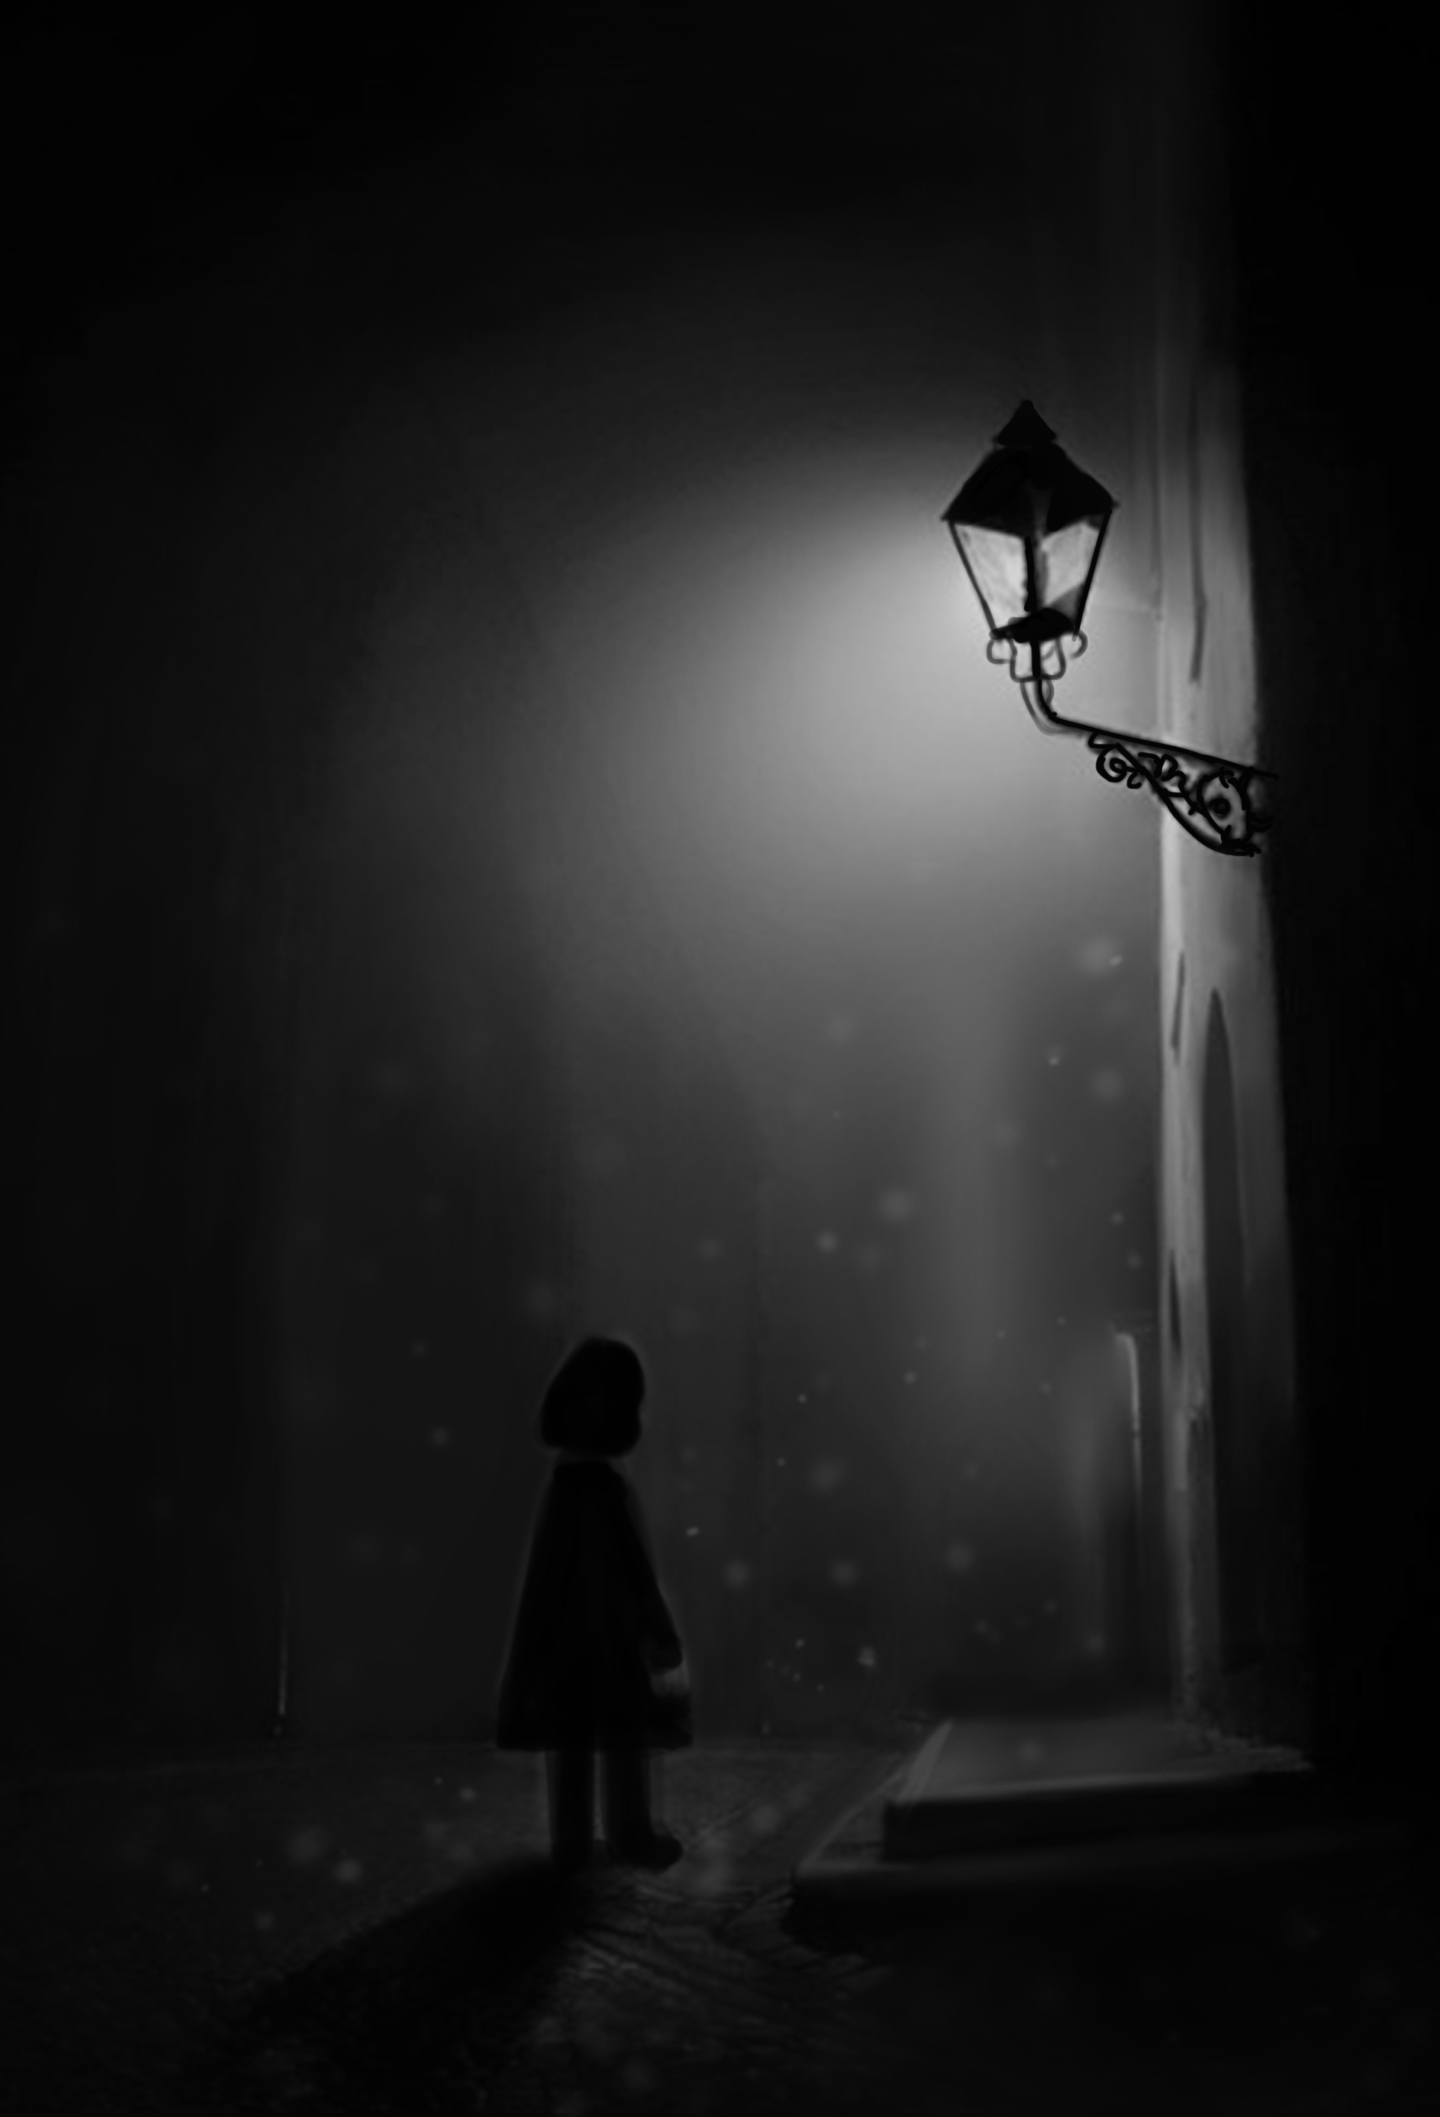 【孤影】:孤独无助的黑夜不是我想要的·内心依旧渴望着光明